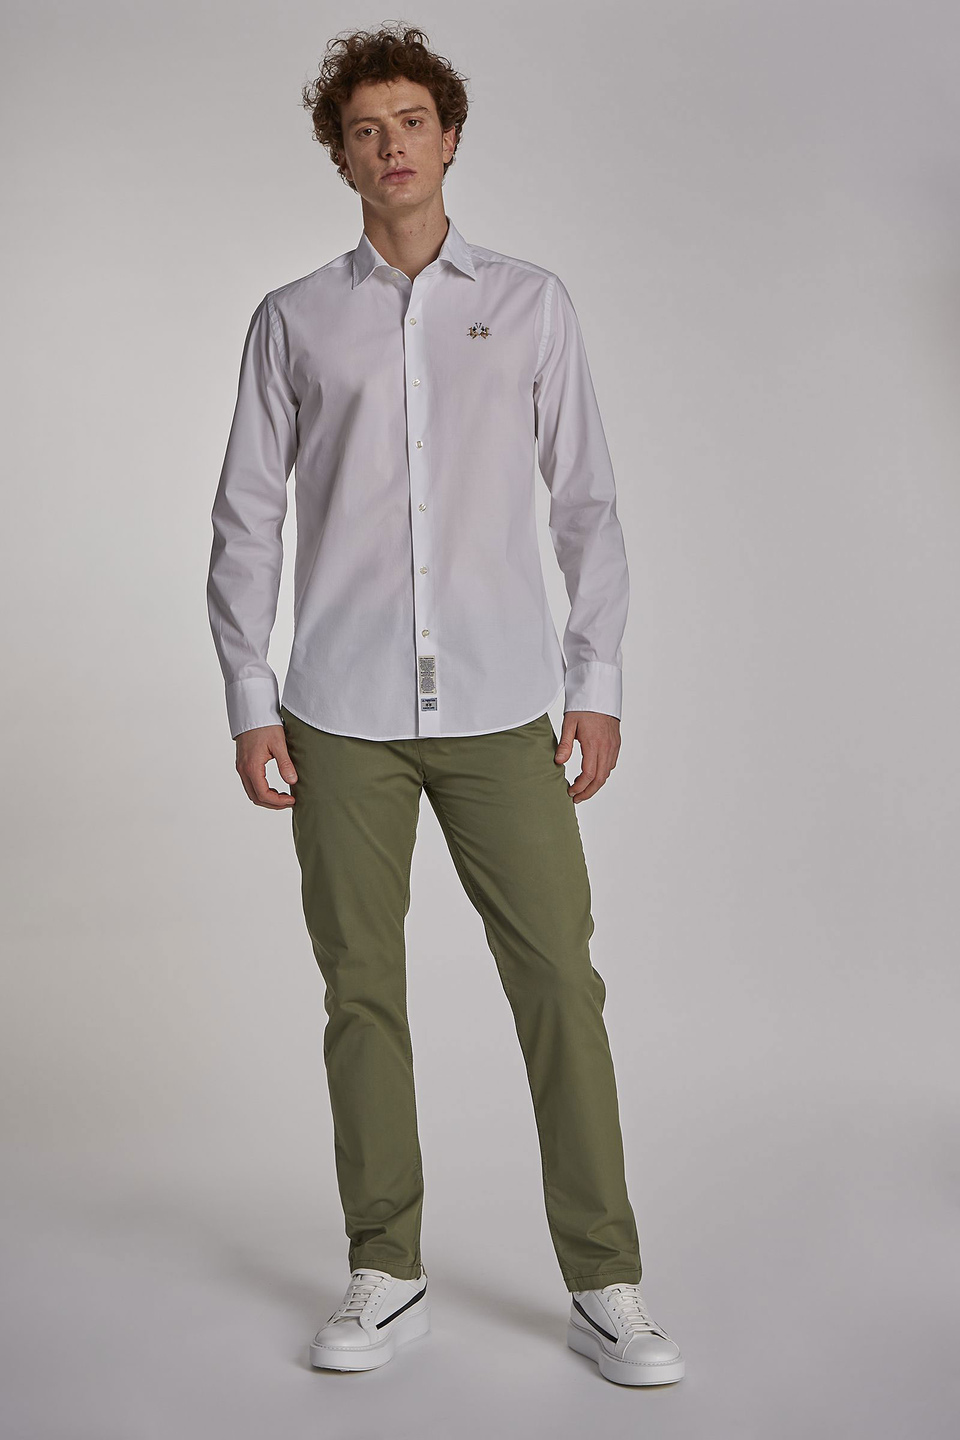 Pantalón de hombre modelo chino de algodón elástico, corte slim - La Martina - Official Online Shop